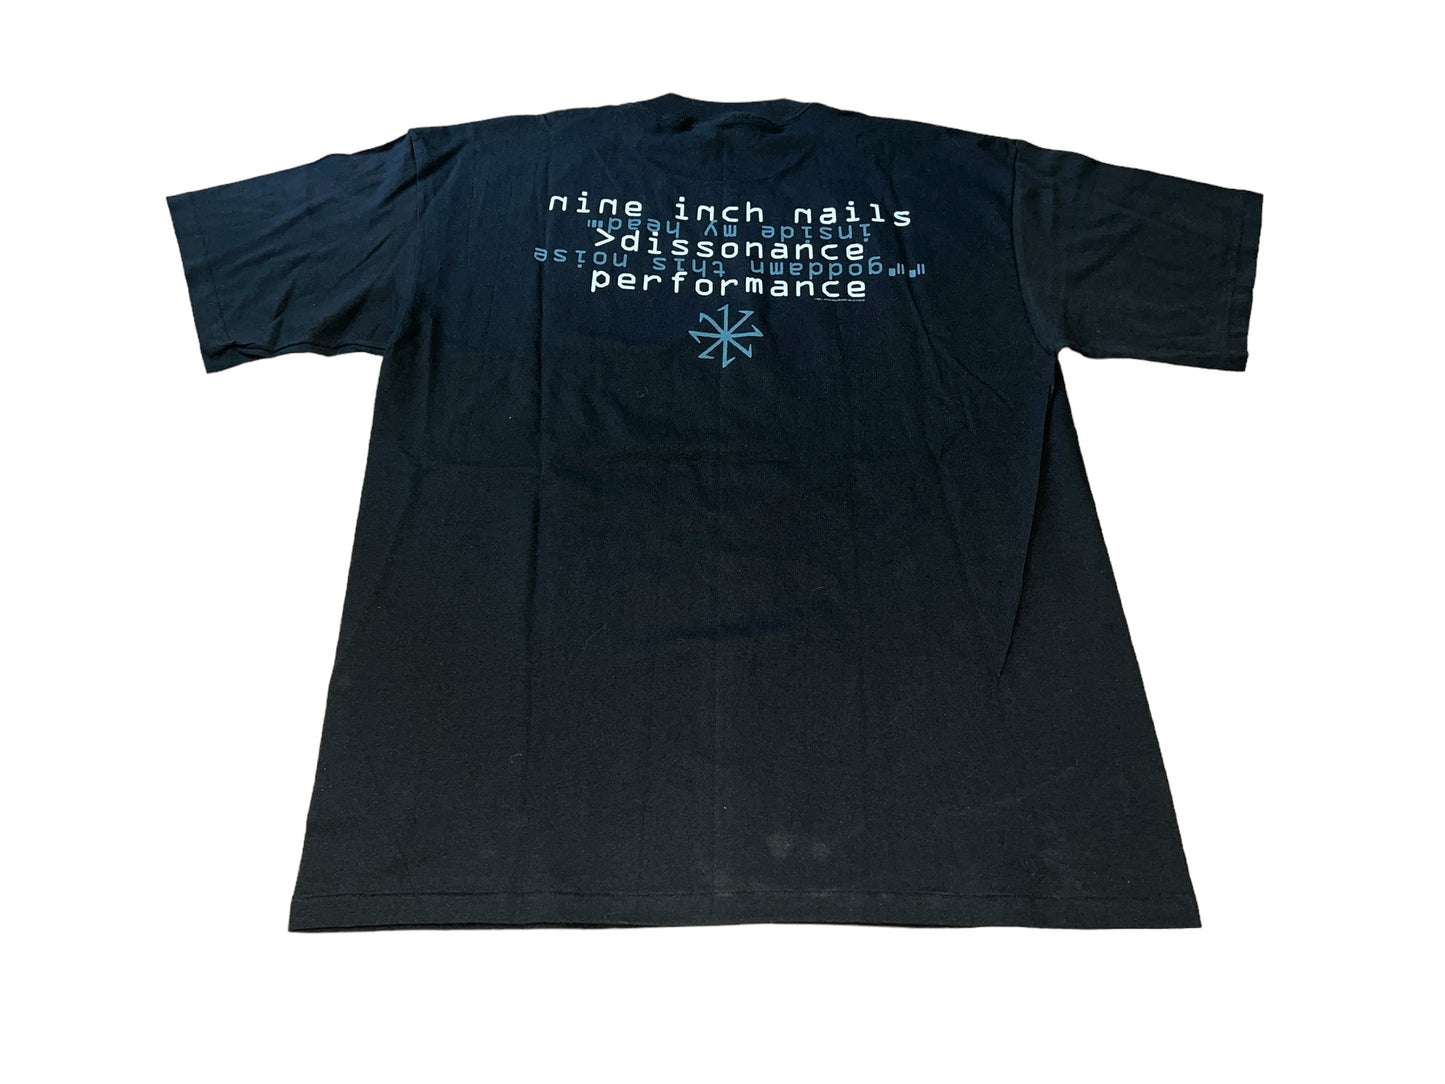 Vintage 1995 Nine Inch Nails T-Shirt